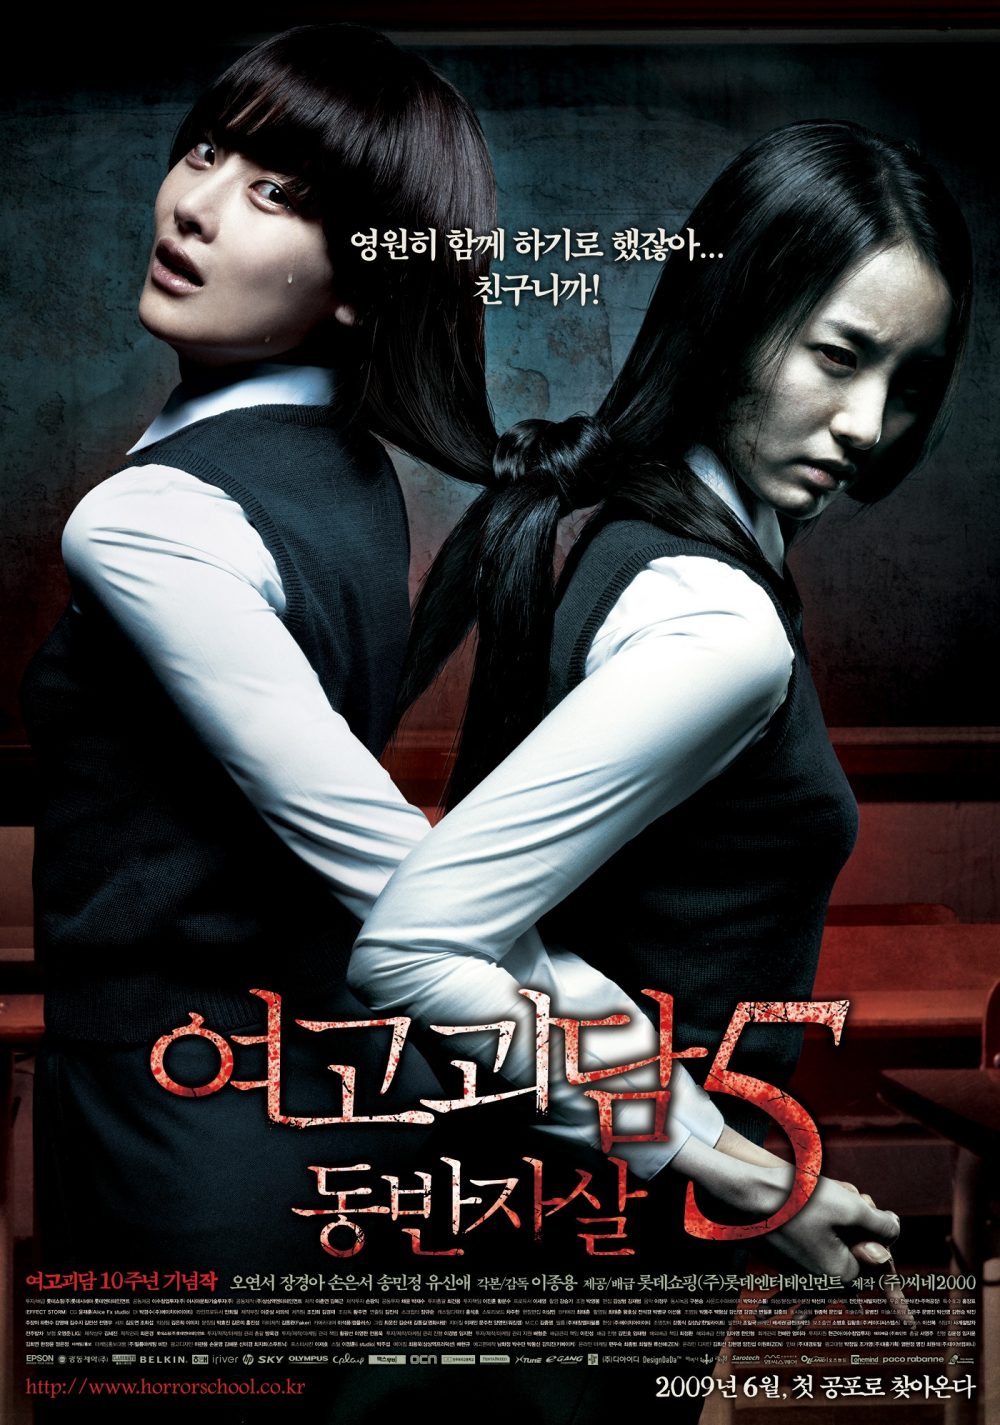 Phim quỷ kinh dị Nước Hàn hoặc nhất từng thời đại: Hành lương y thì thì thầm - Whispering Corridors (1998)